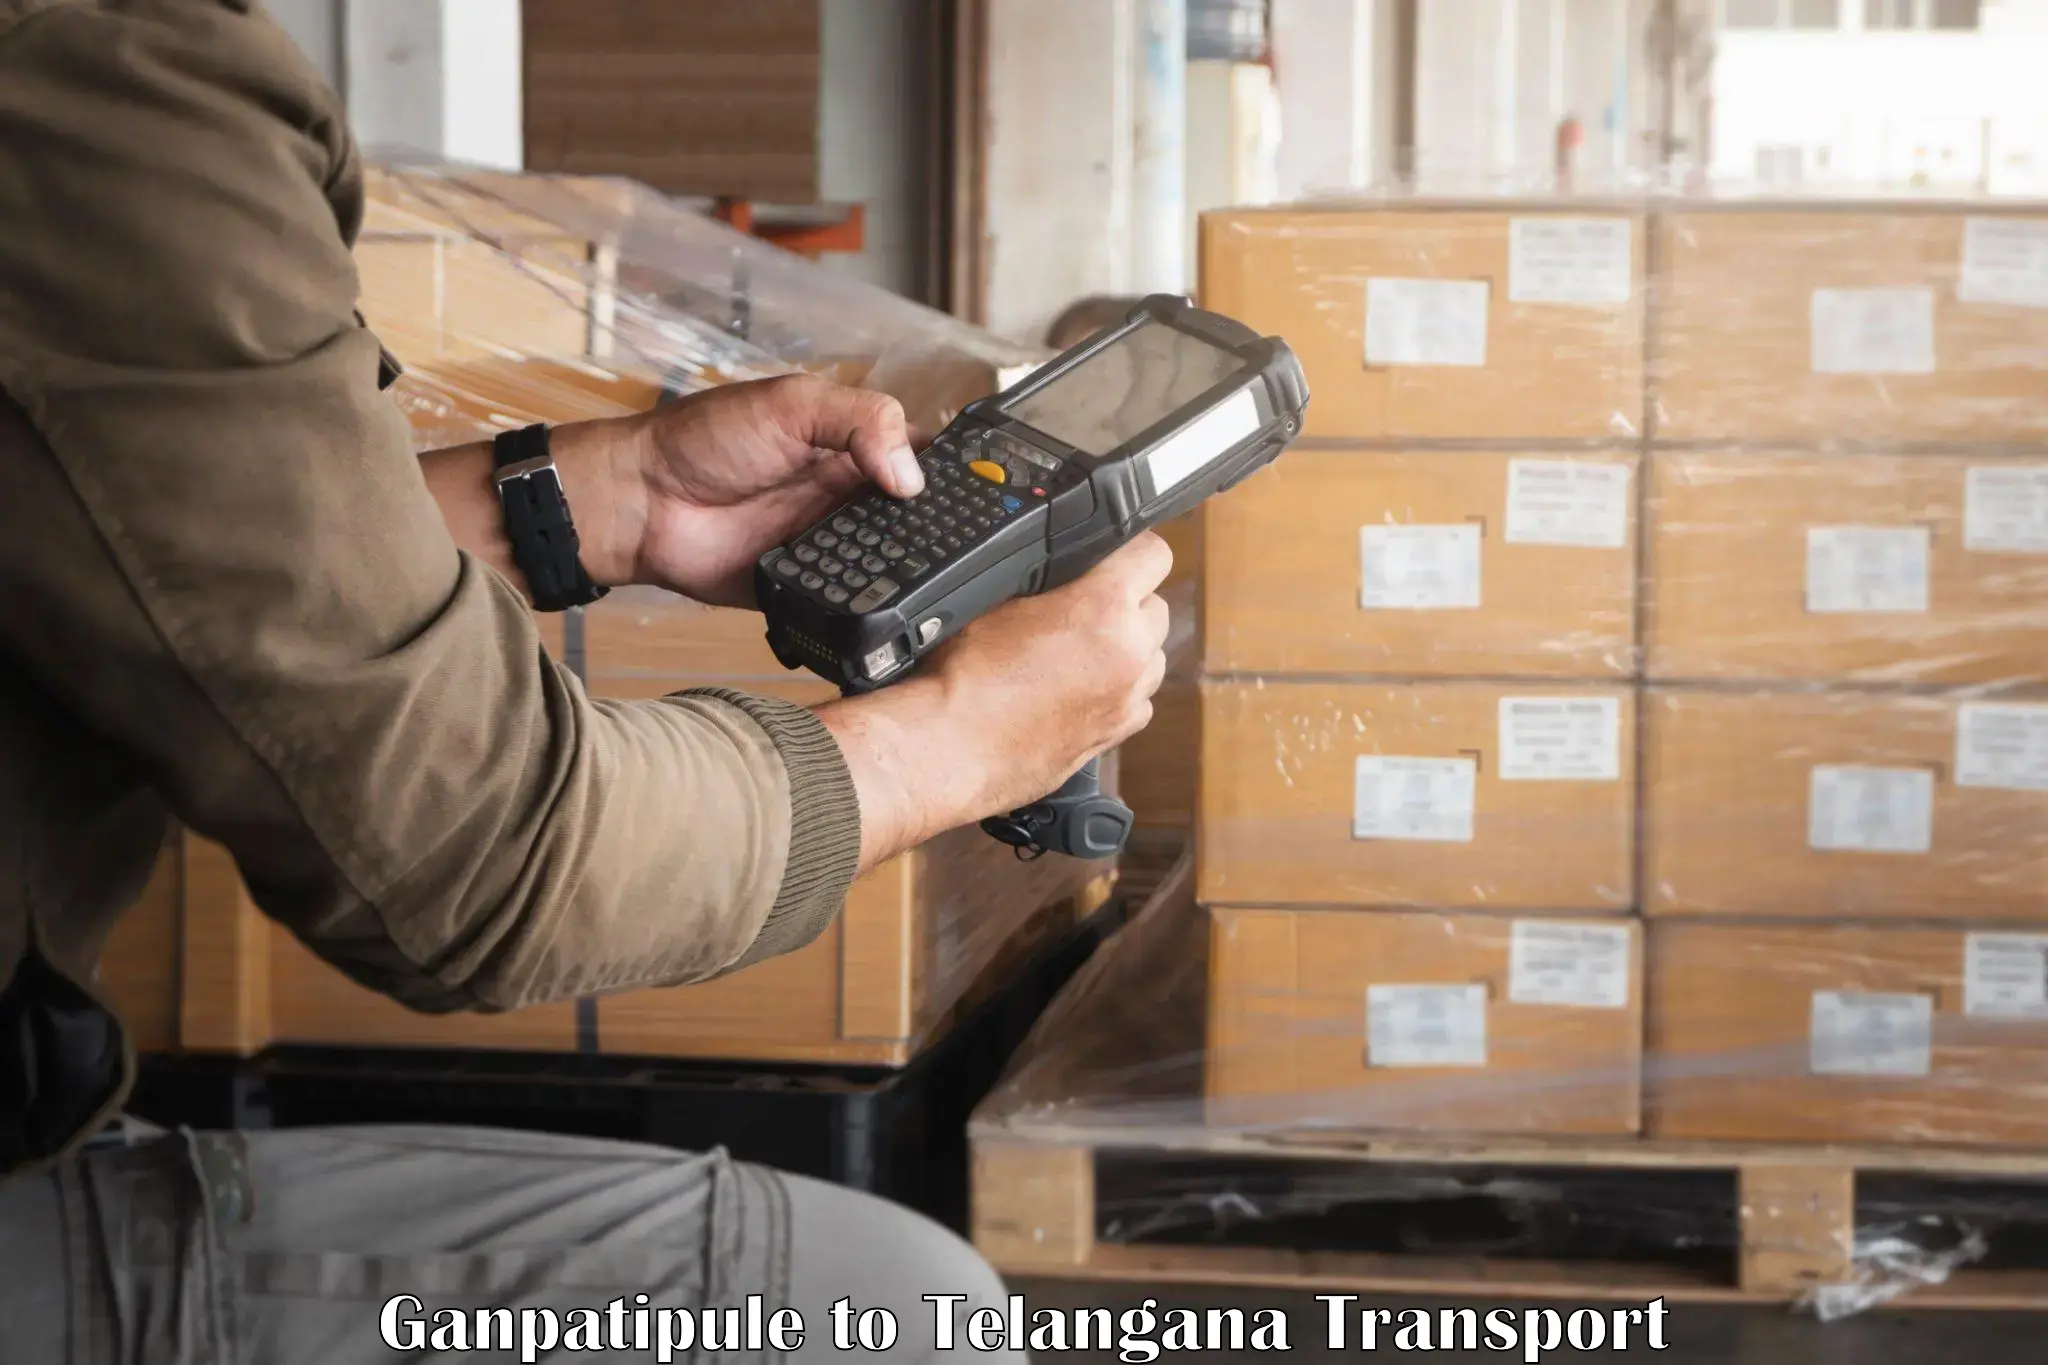 Online transport service in Ganpatipule to Mulugu